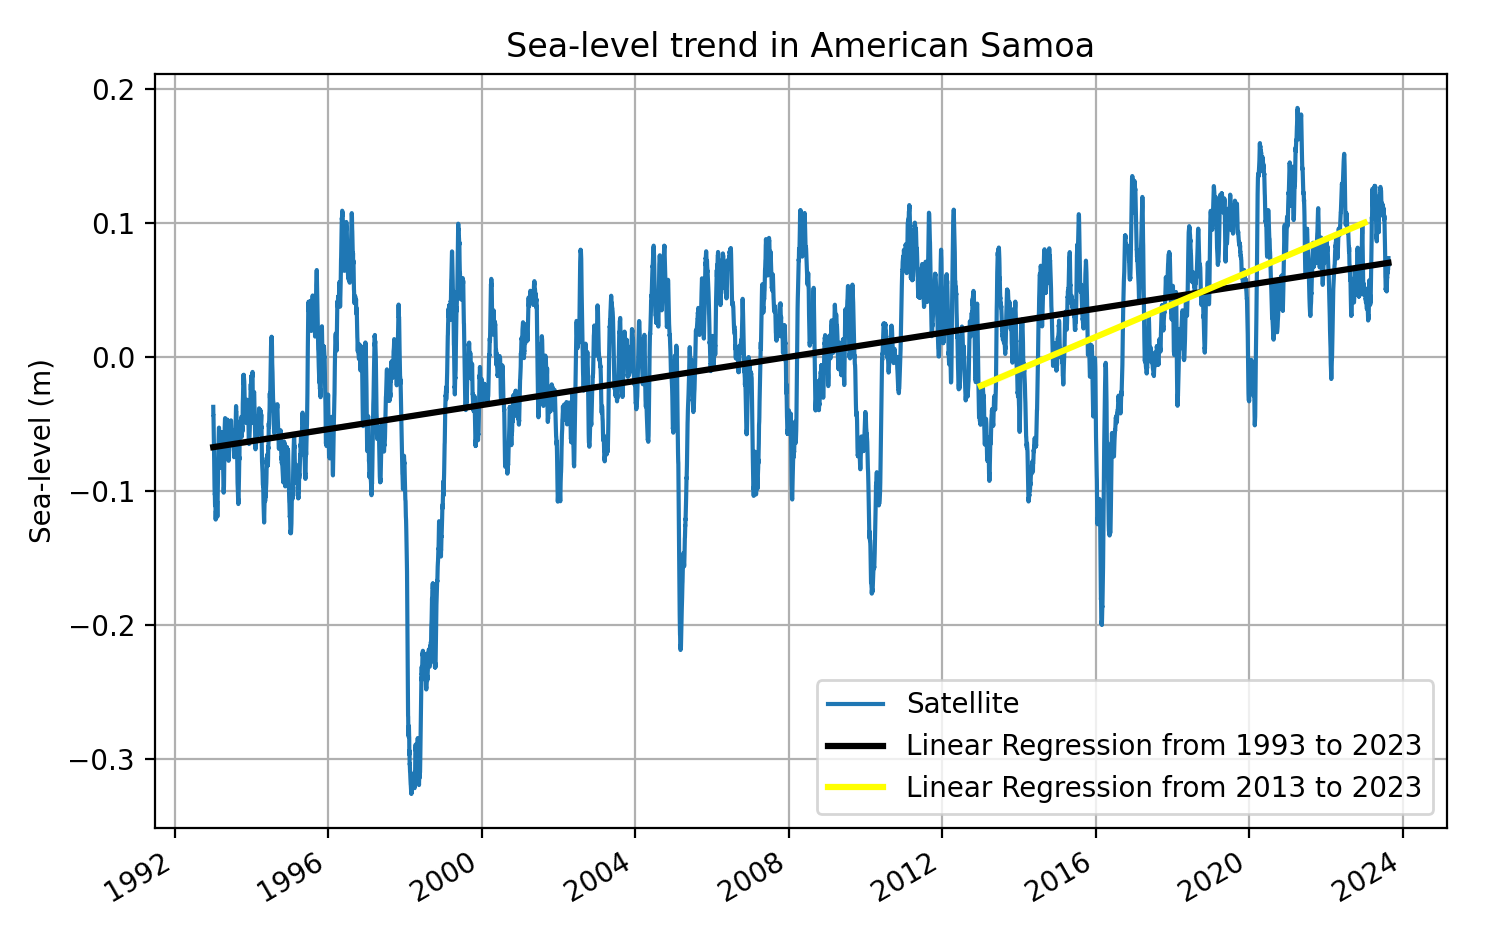 satellite SLR trend for American Samoa